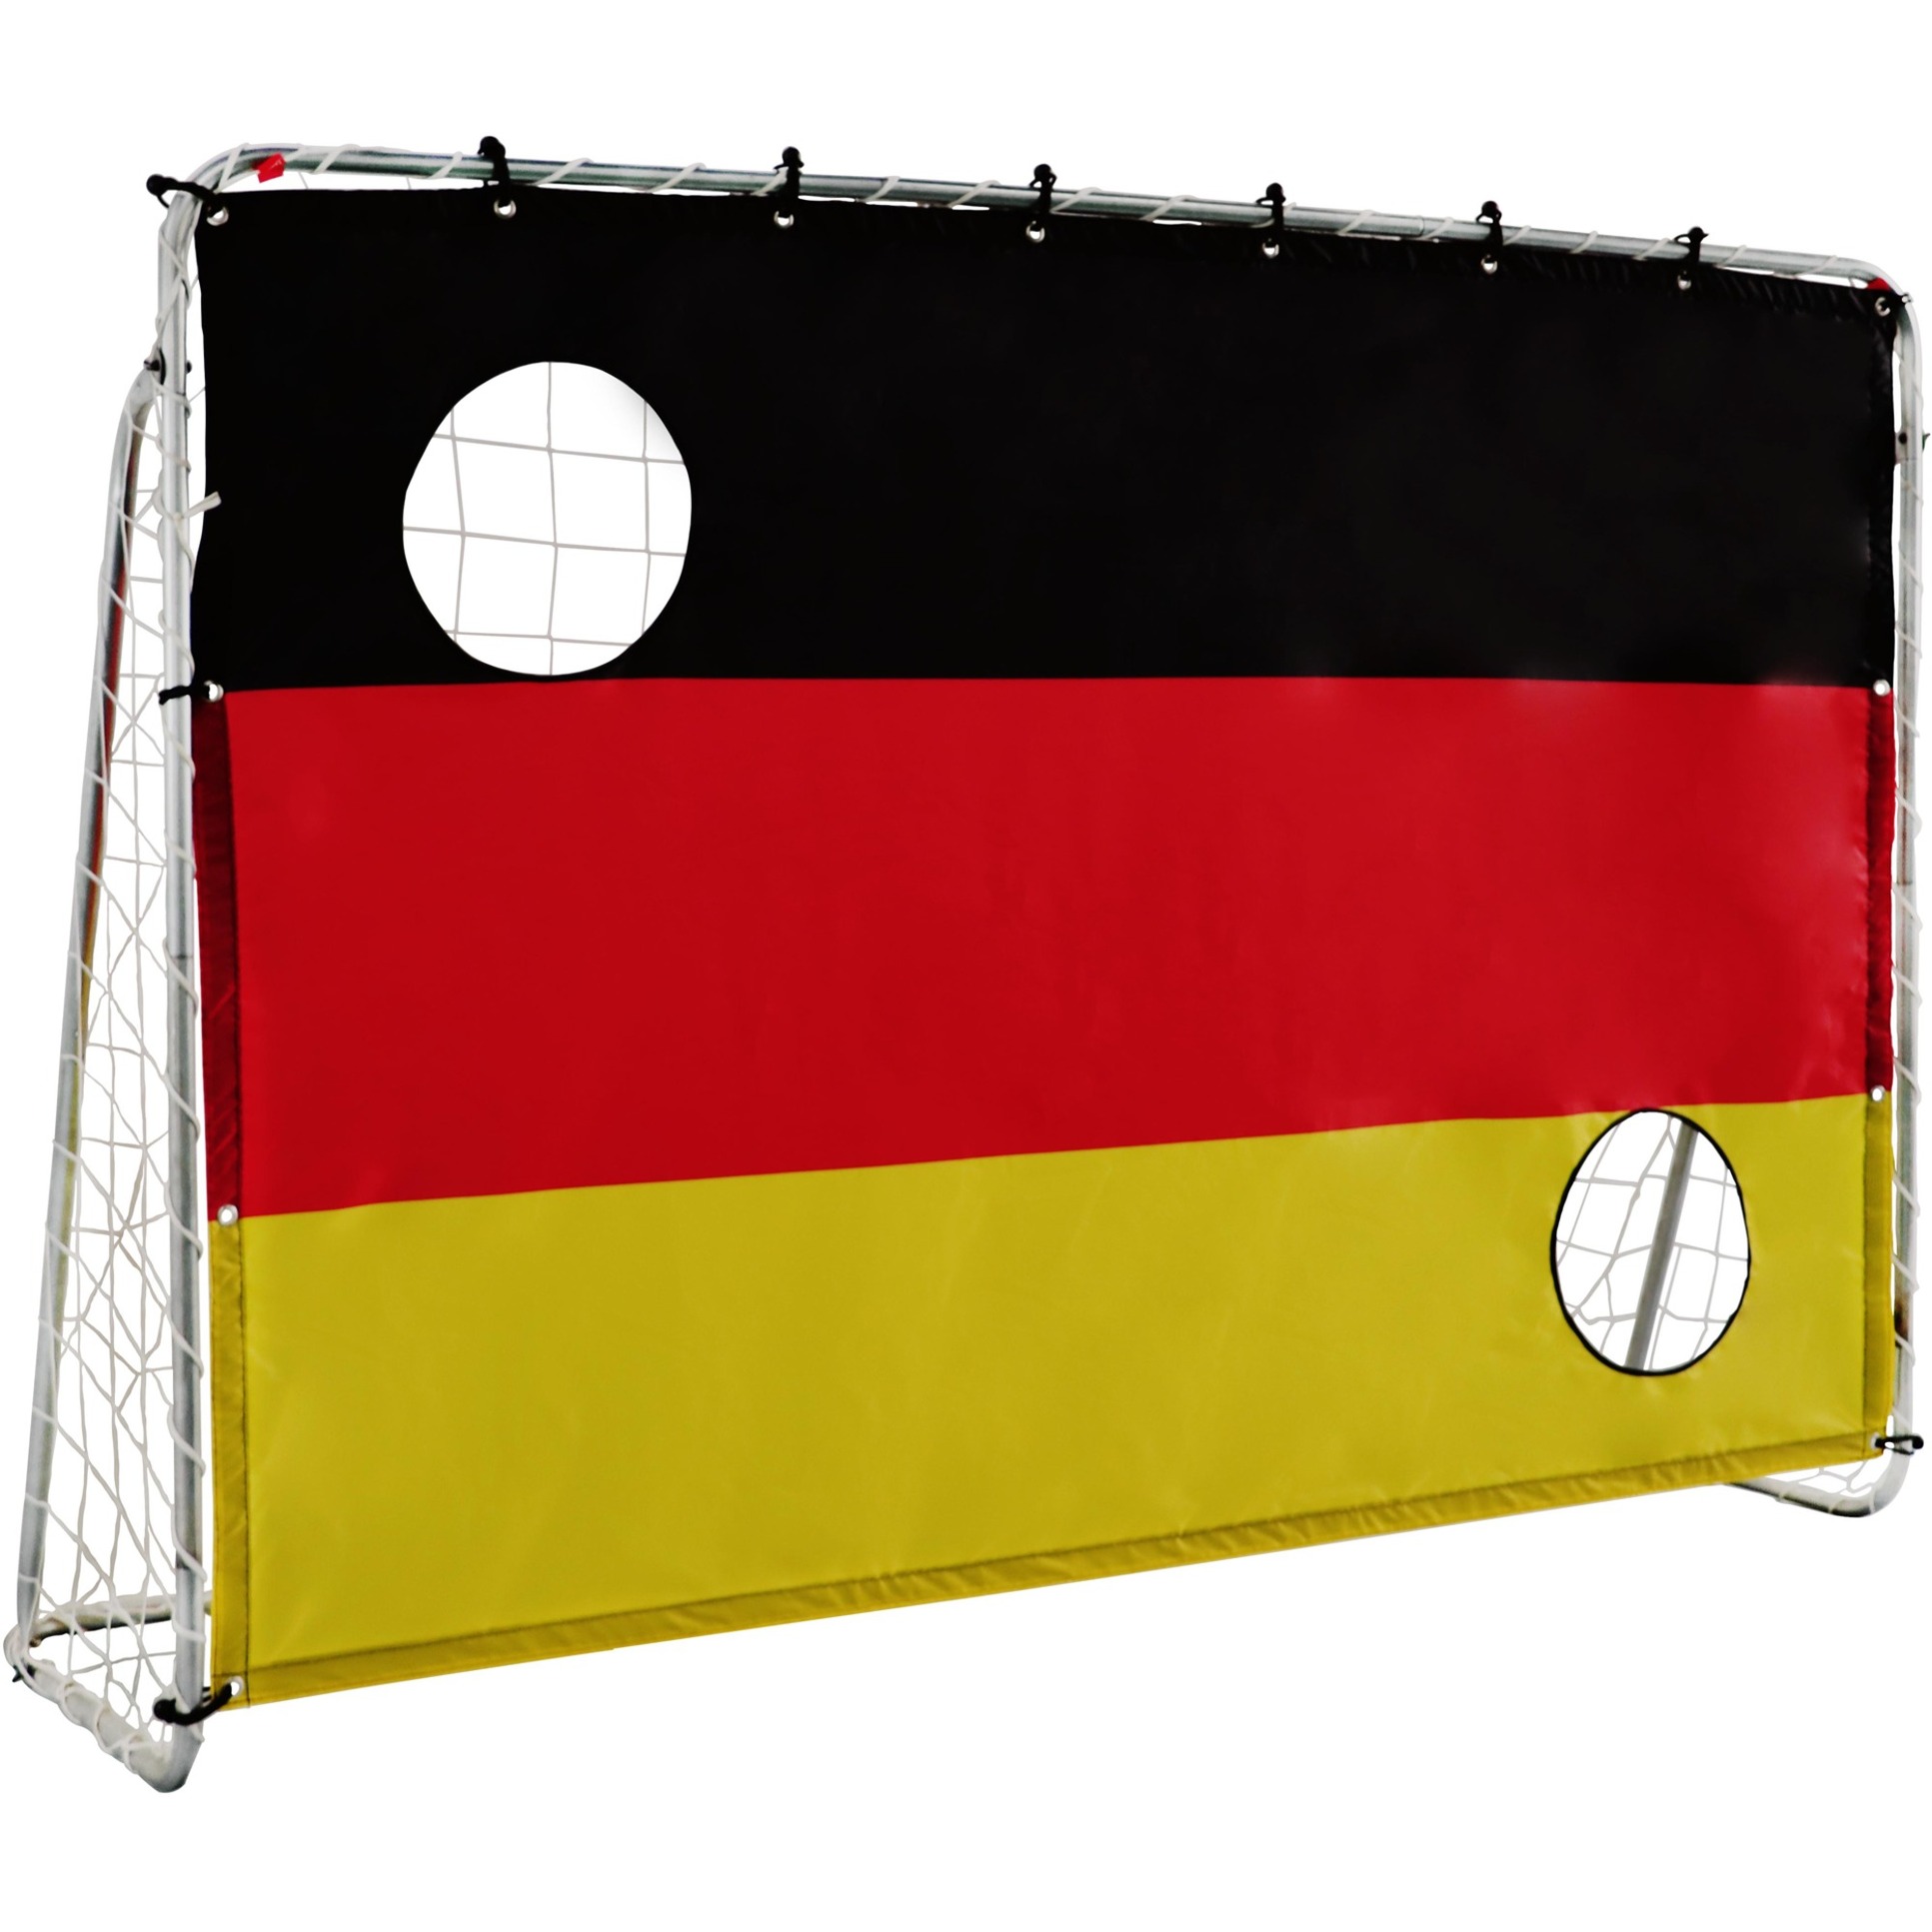 Image of Alternate - 2in1 Set Fußballtor mit Netz und Torwand online einkaufen bei Alternate